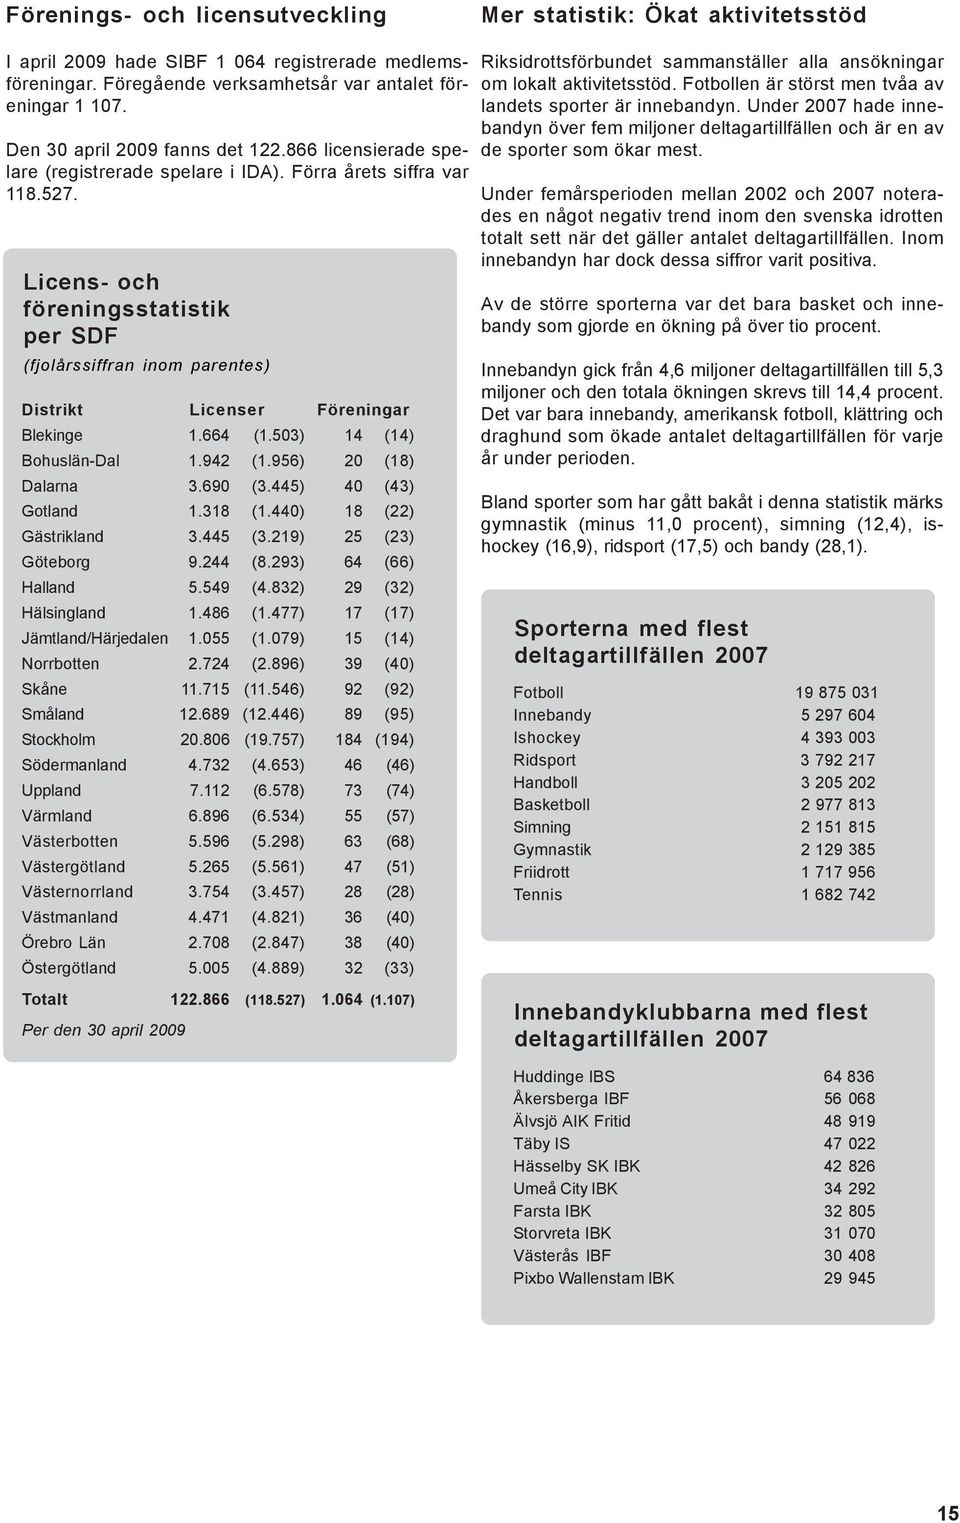 Licens- och föreningsstatistik per SDF (fjolårssiffran inom parentes) Distrikt Licenser Föreningar Blekinge 1.664 (1.503) 14 (14) Bohuslän-Dal 1.942 (1.956) 20 (18) Dalarna 3.690 (3.